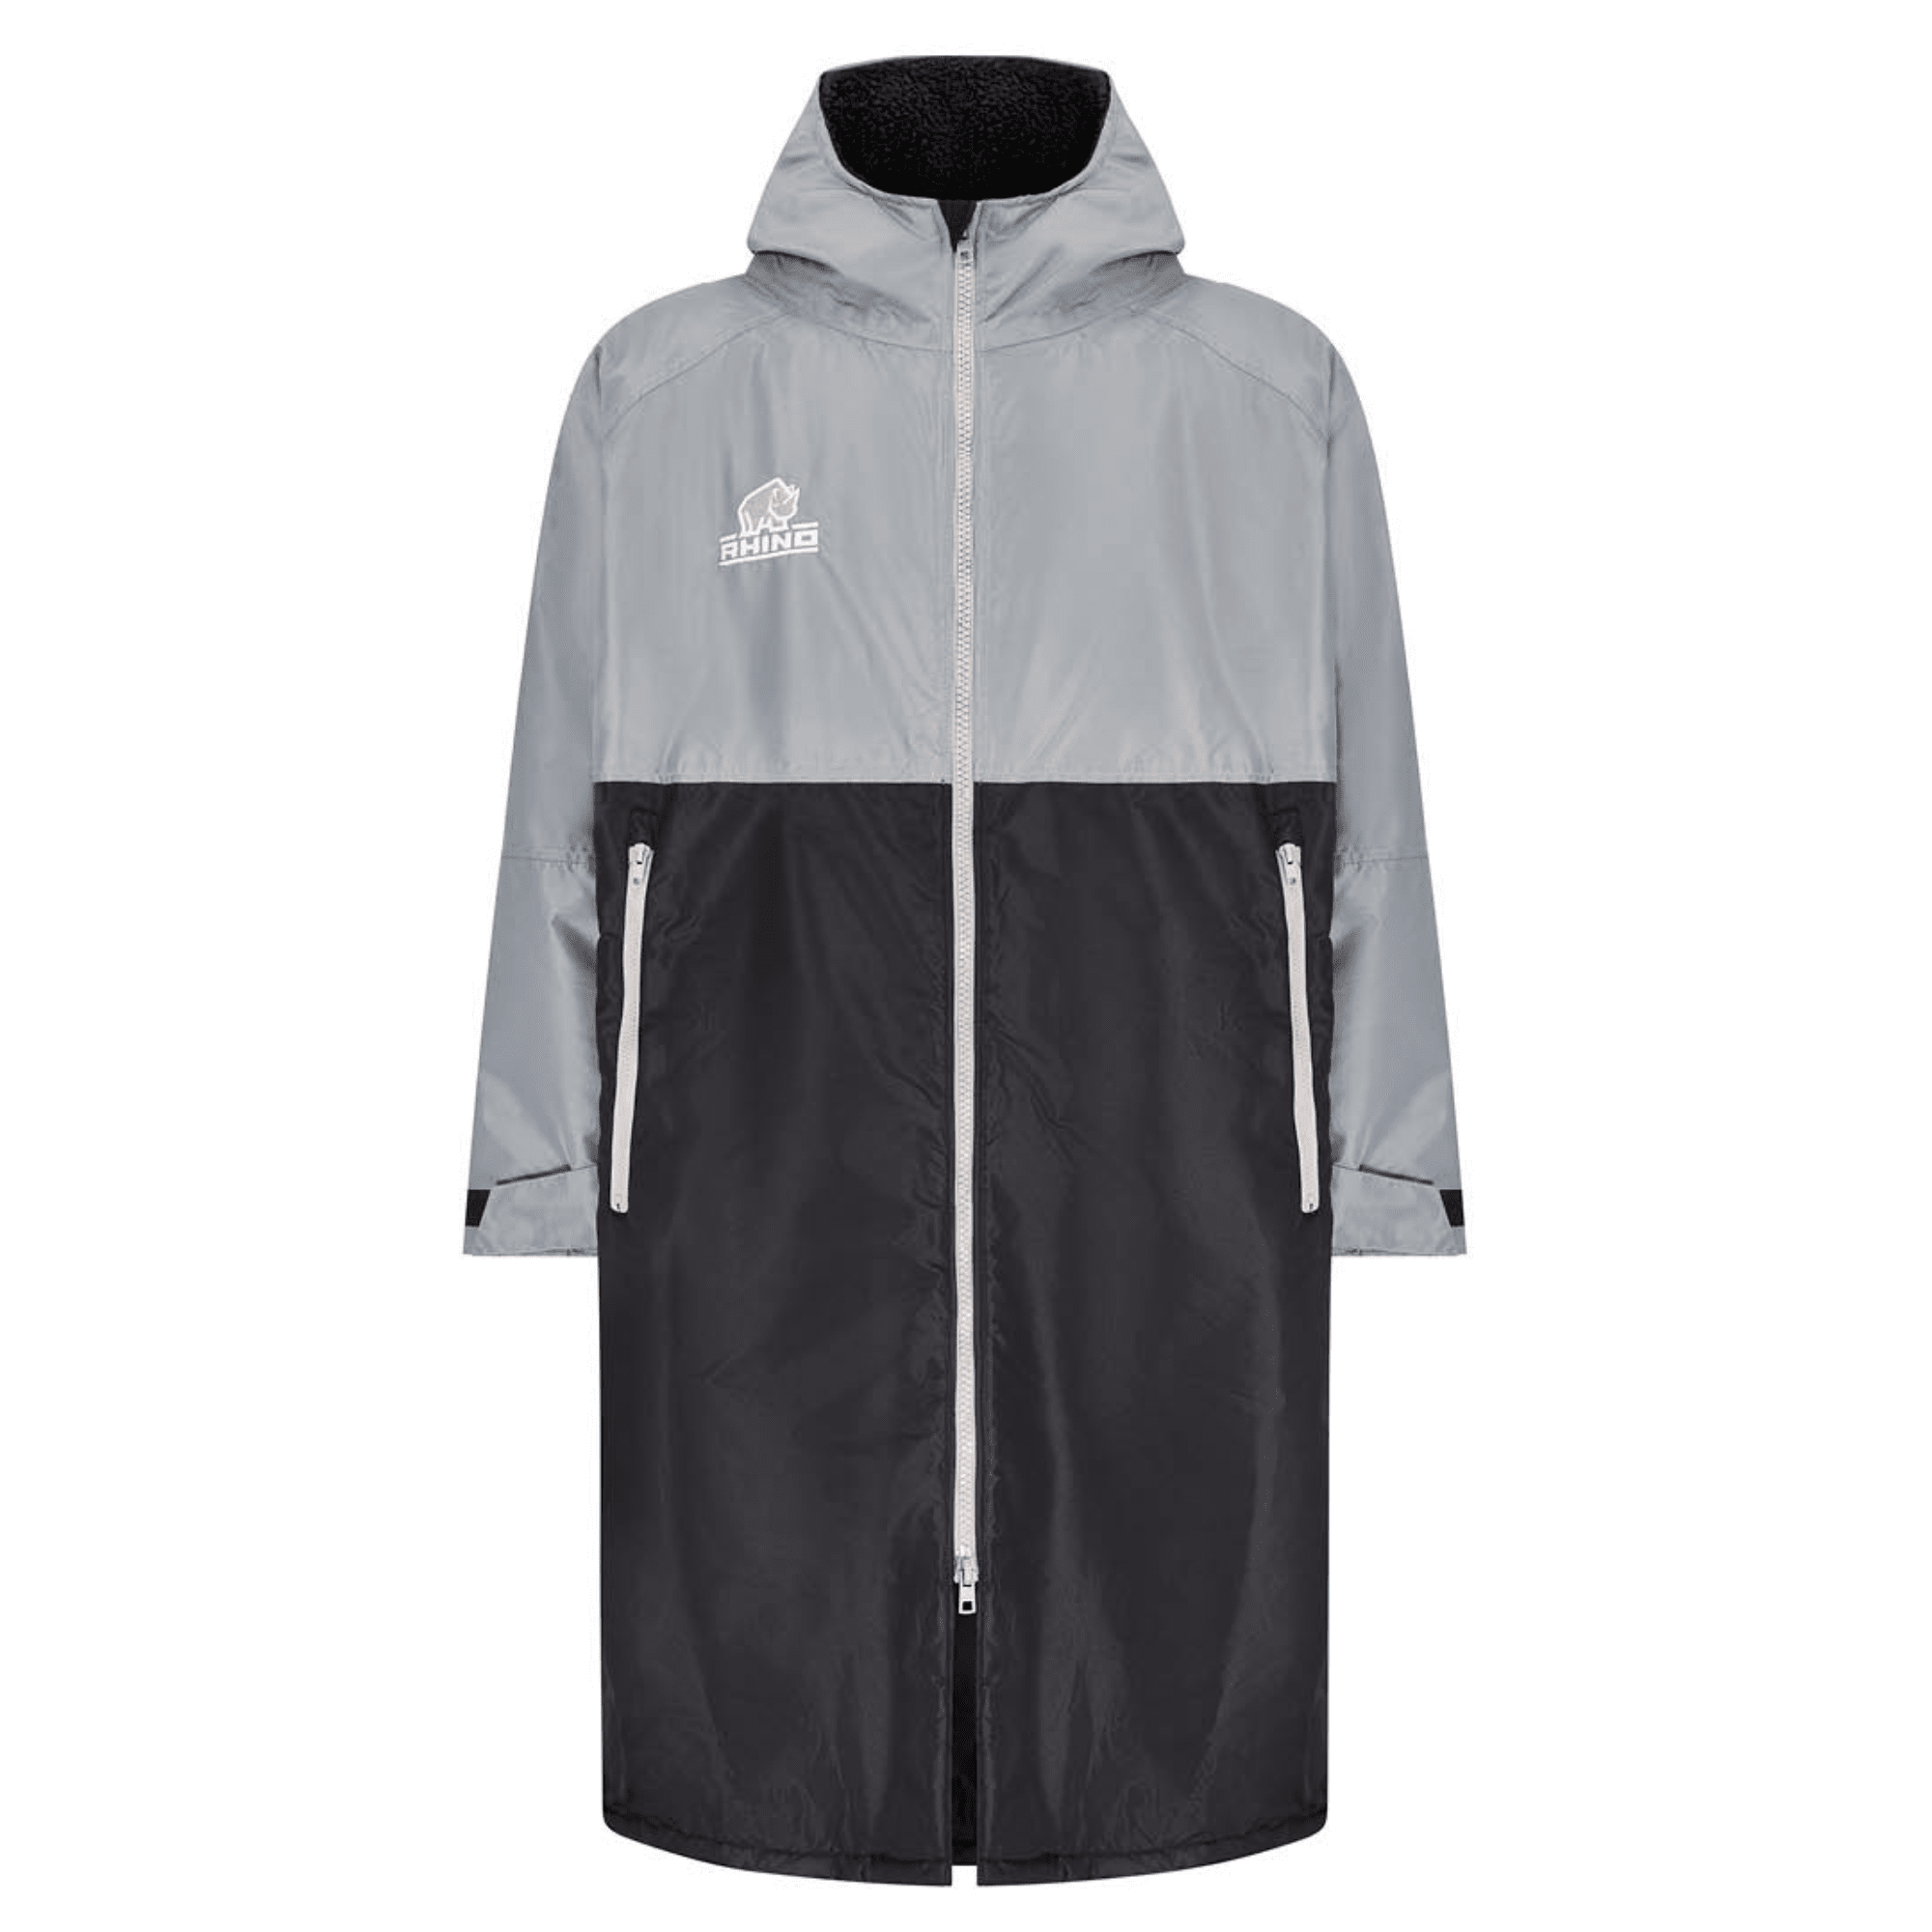 Sherpa Robe Dual Toned Grey and Black Fleece Inner Lining Waterproof Jacket Keep Dry